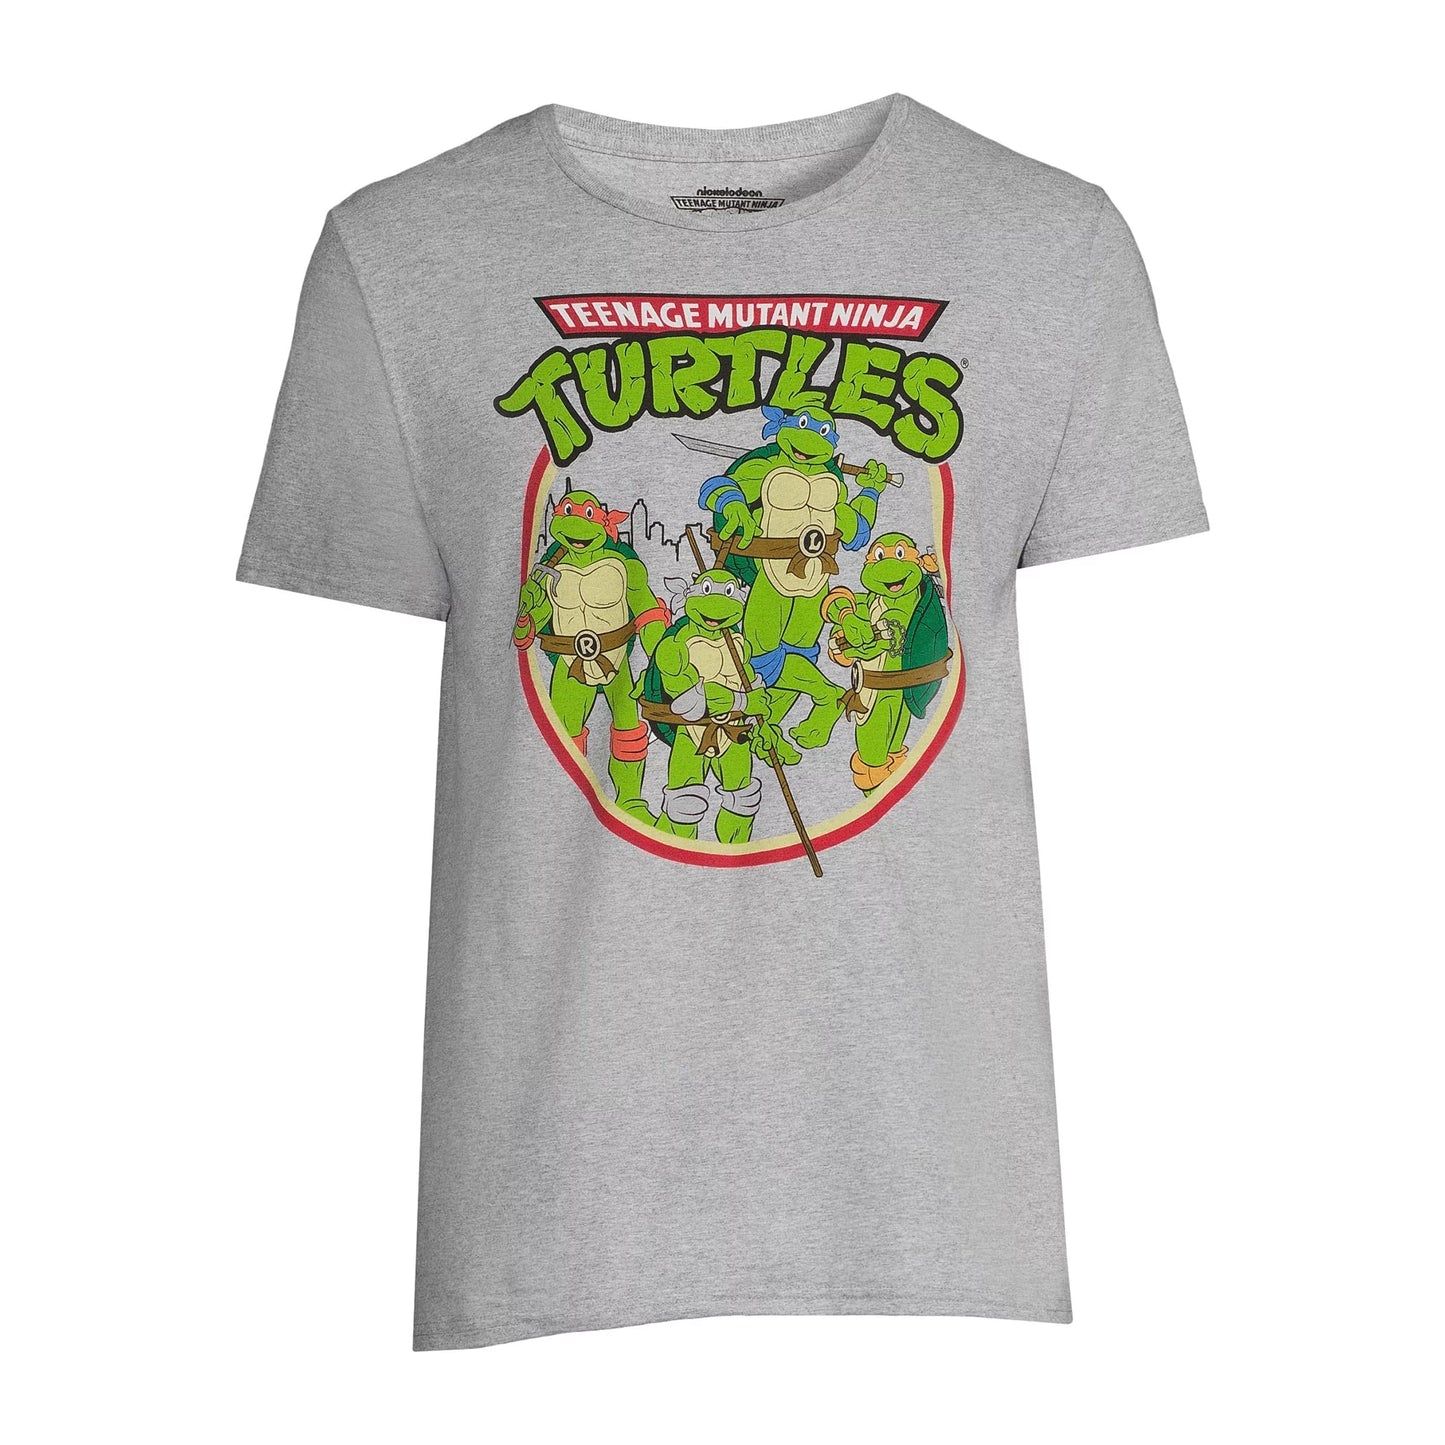 Teenage Mutant Ninja Turtles "Retro Look" T-Shirt Größe M (38-40)